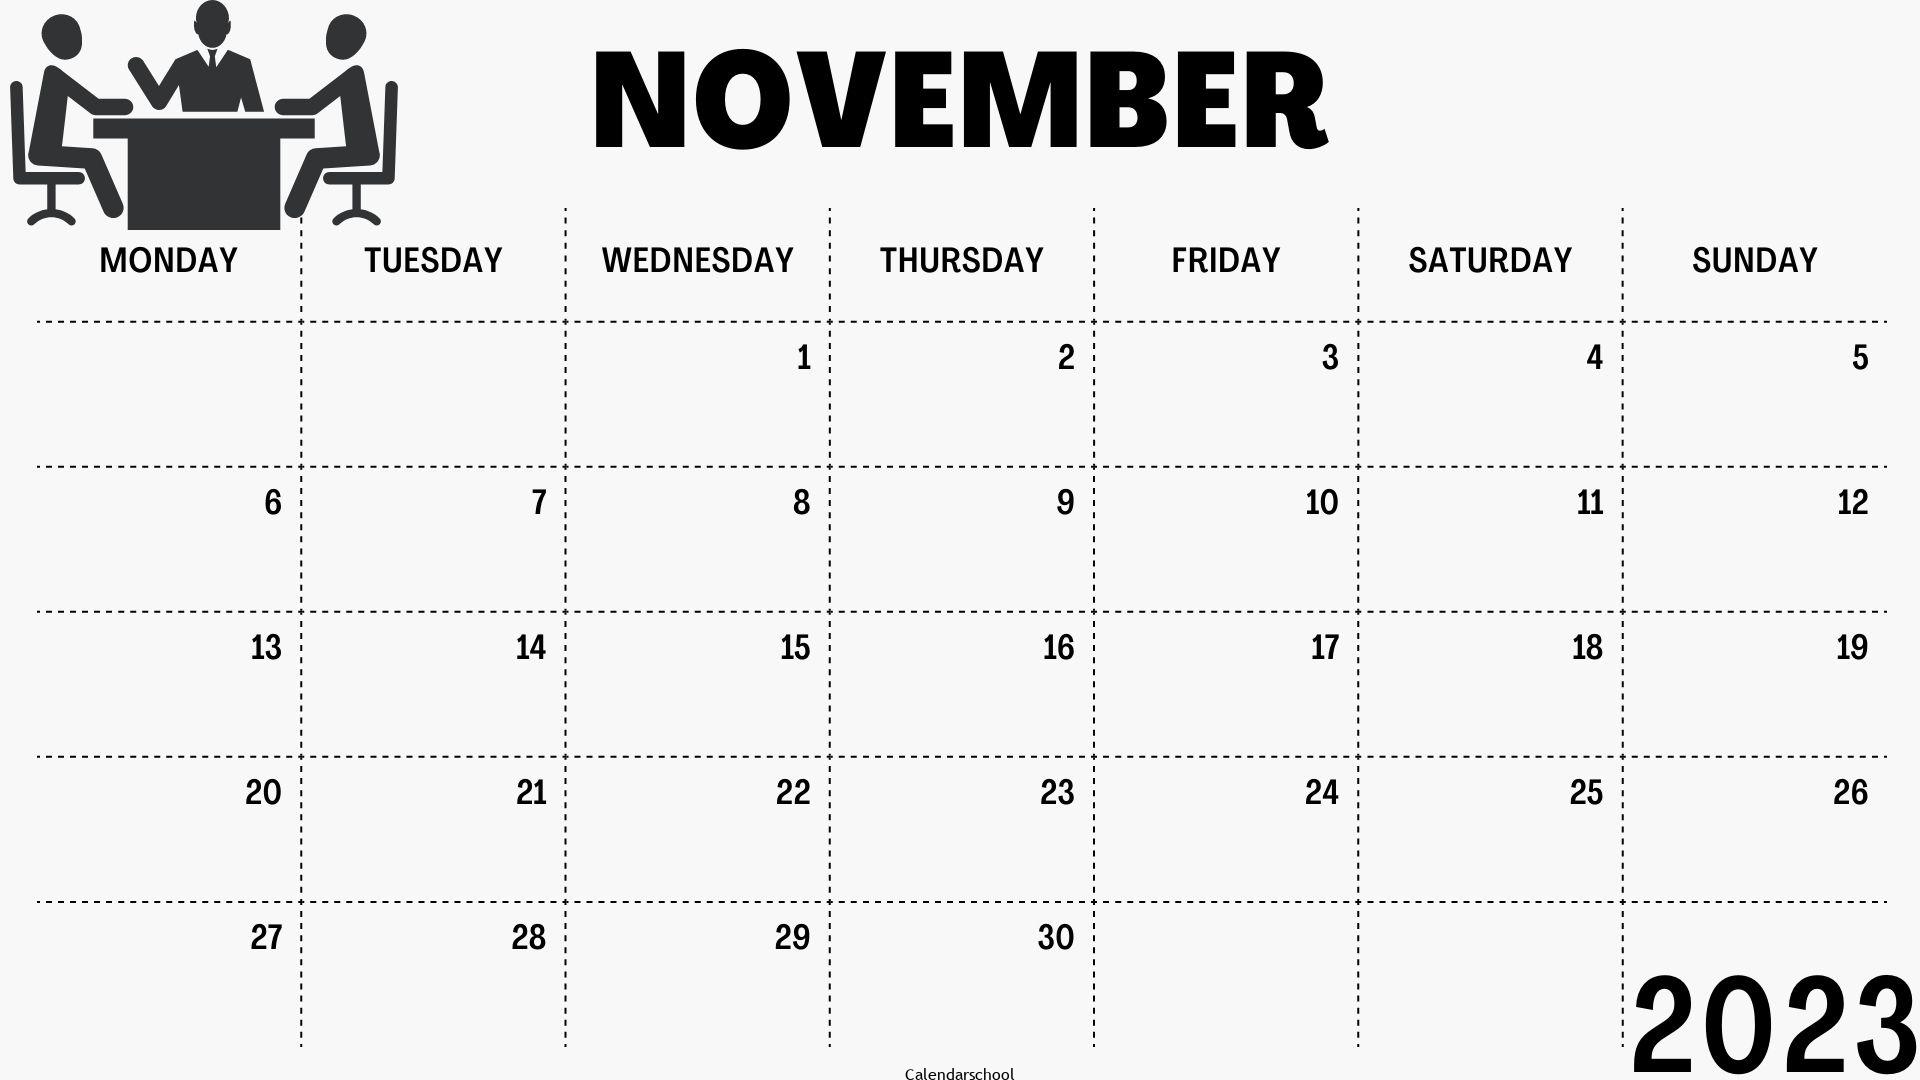 November 2023 Printable Calendar With Bank Holidays